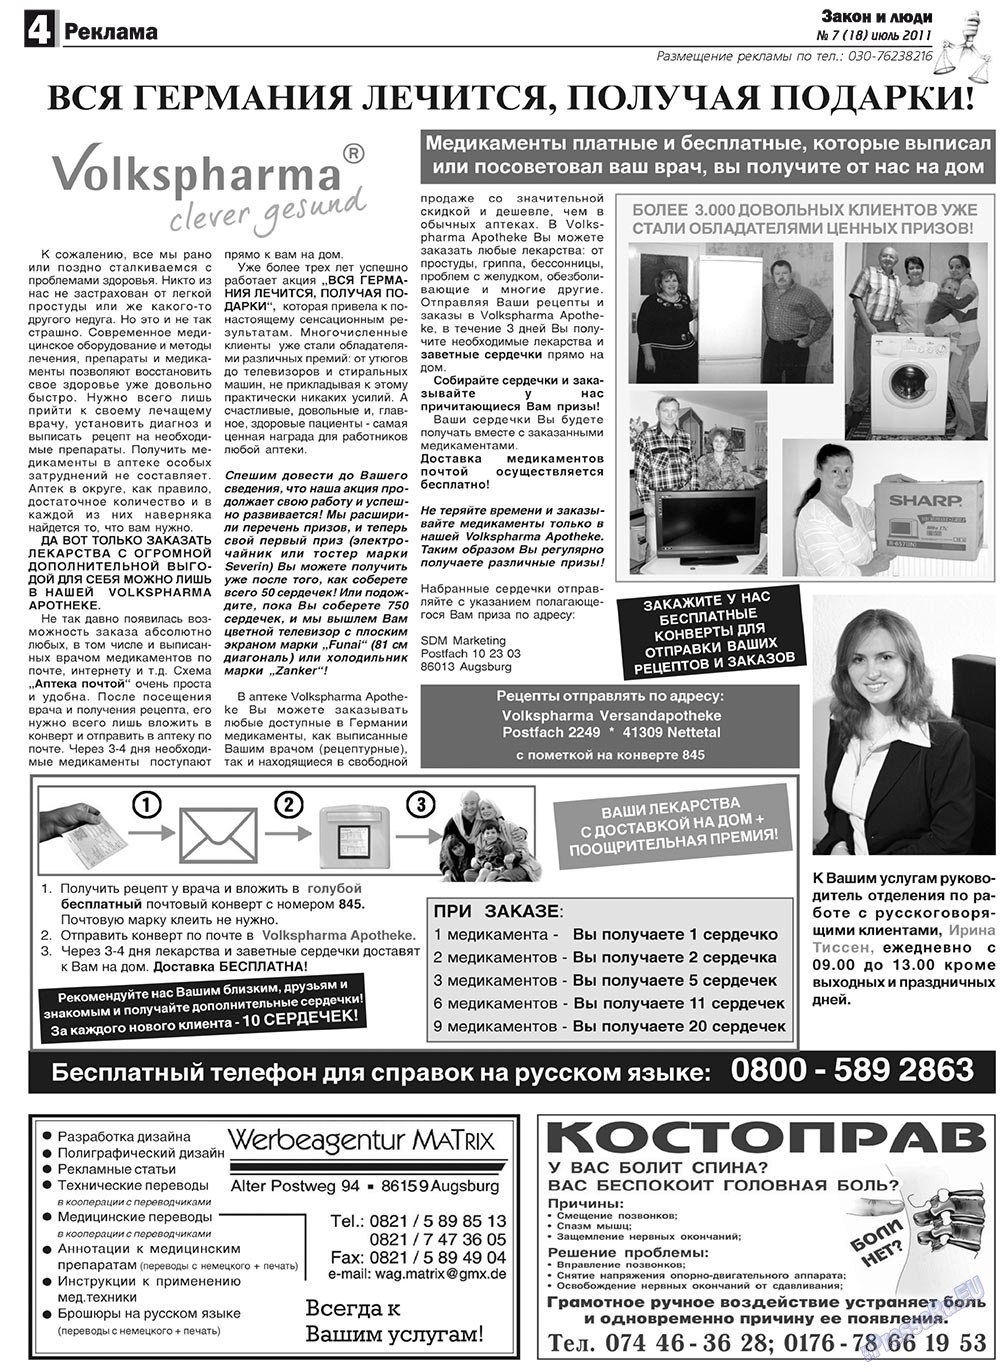 Закон и люди, газета. 2011 №7 стр.4